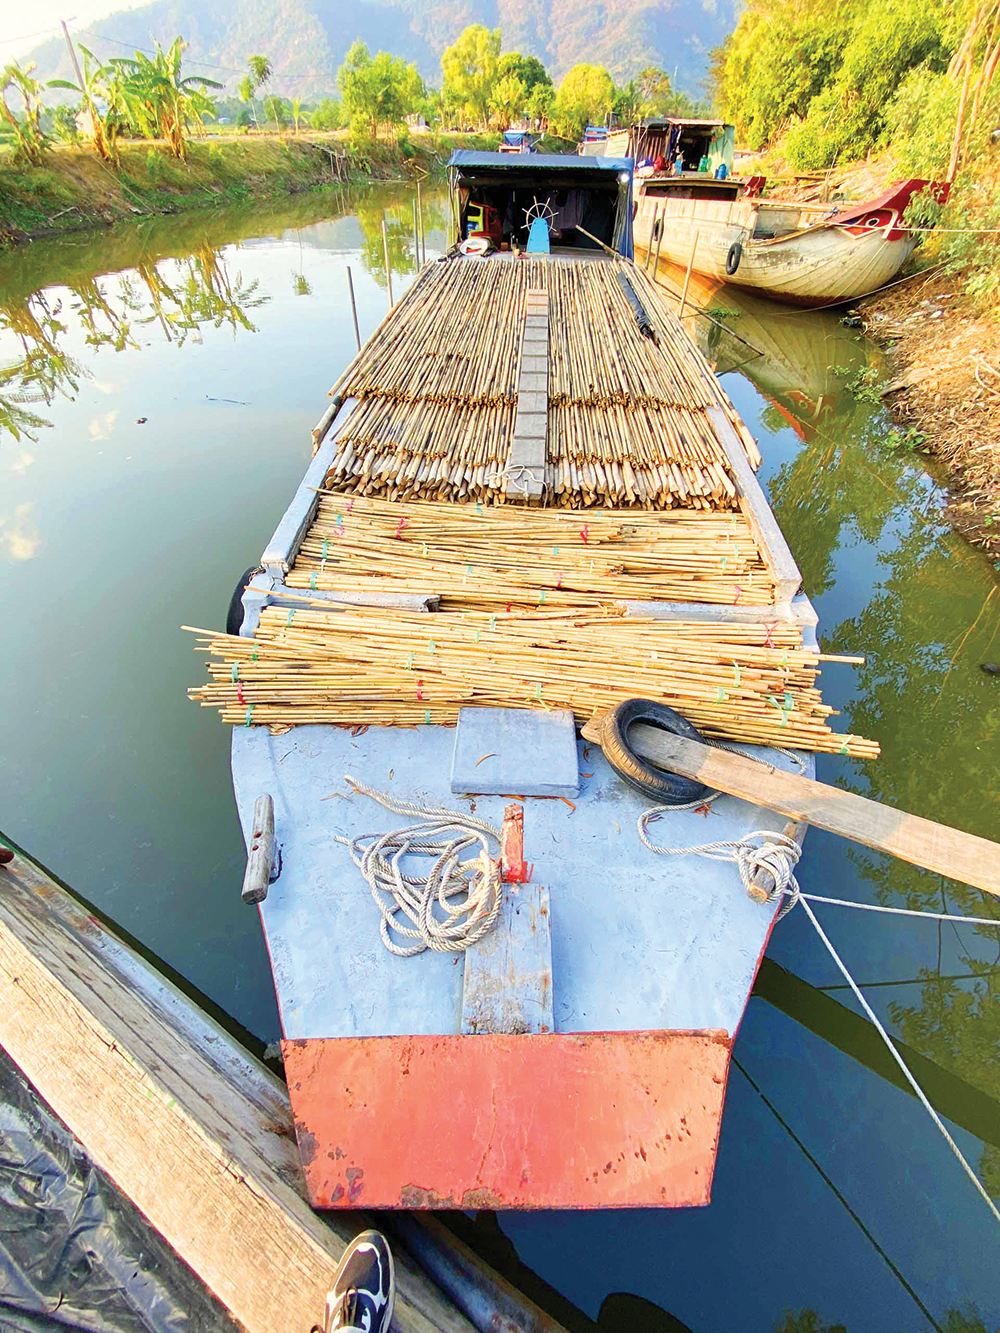 Chợ làng lạ lùng ở An Giang, trên bến dưới thuyền, tấp nập cả năm chỉ bán cây tầm vông thẳng tuột- Ảnh 1.